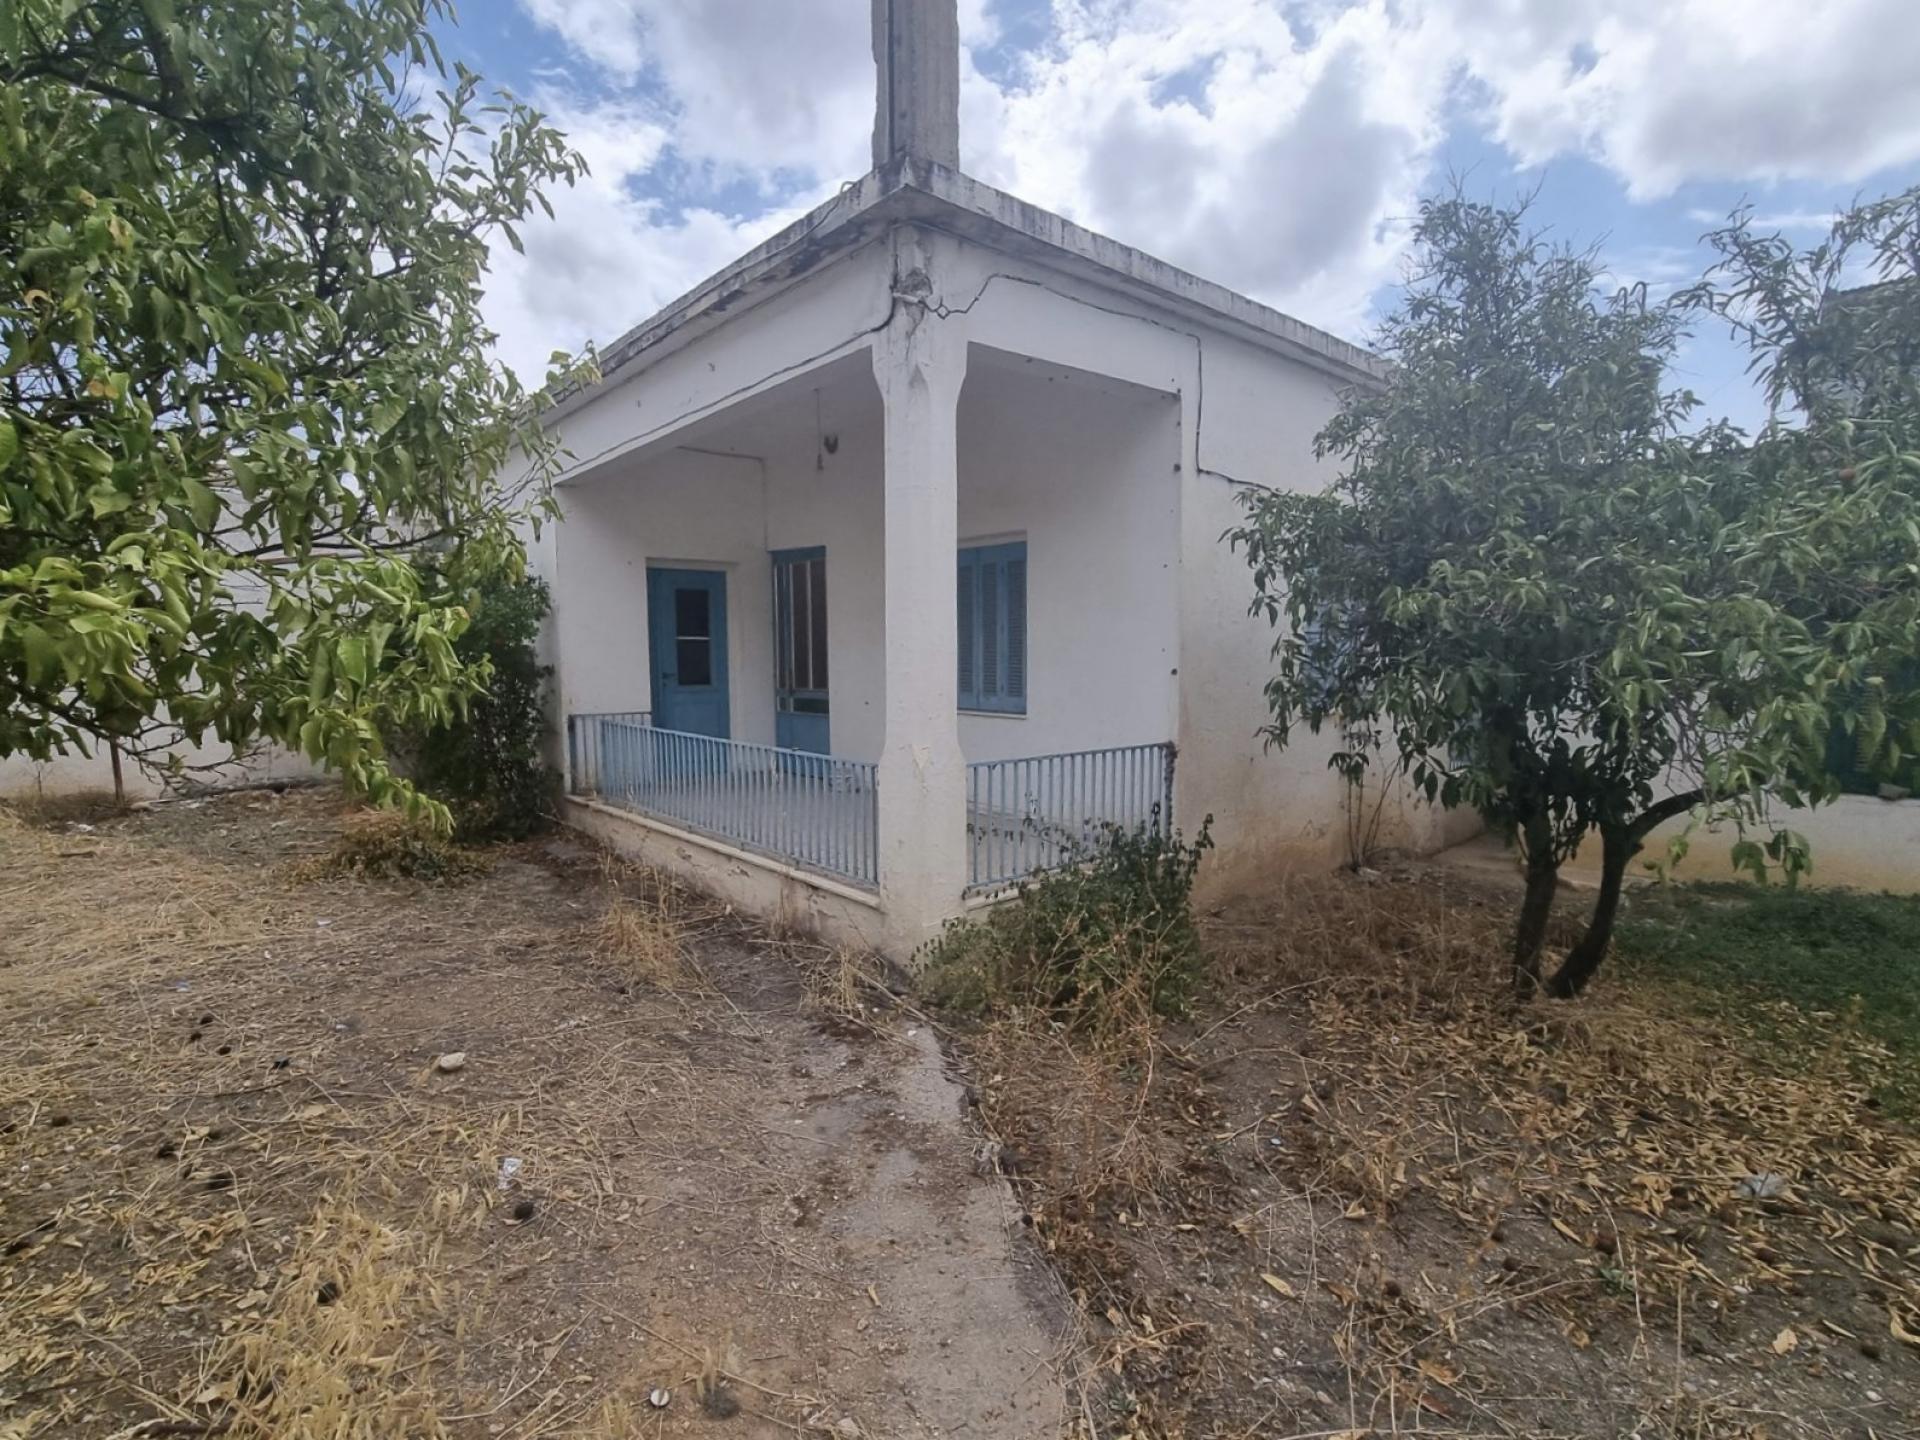 Πώληση Μονοκατοικίας στις Μοίρες Ηρακλείου Κρήτης κοντά στον Άγιο Νεκτάριο